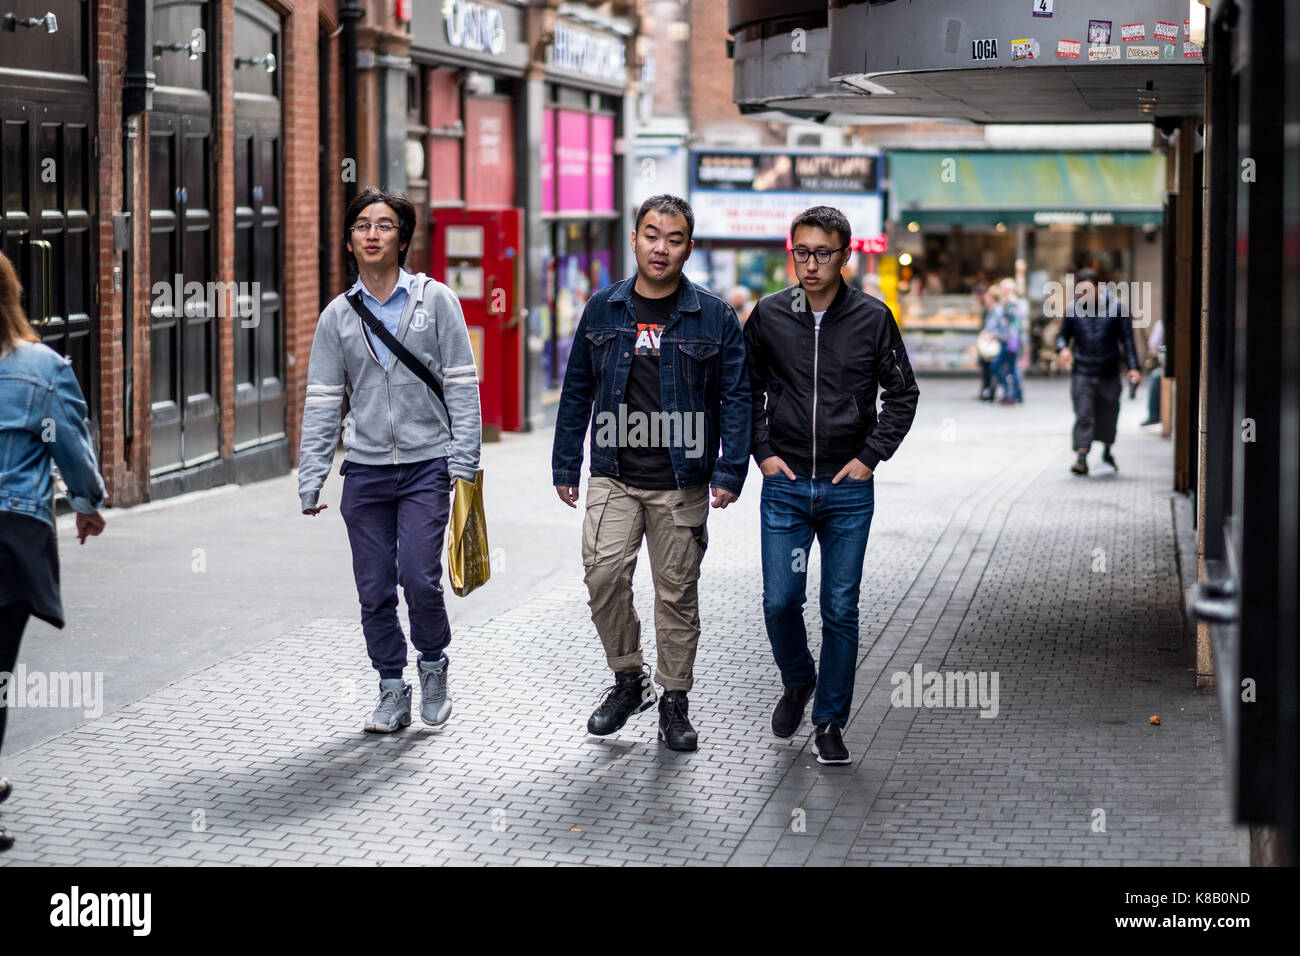 Les jeunes hommes d'origine asiatique dans la région de China Town, Londres, UK Banque D'Images